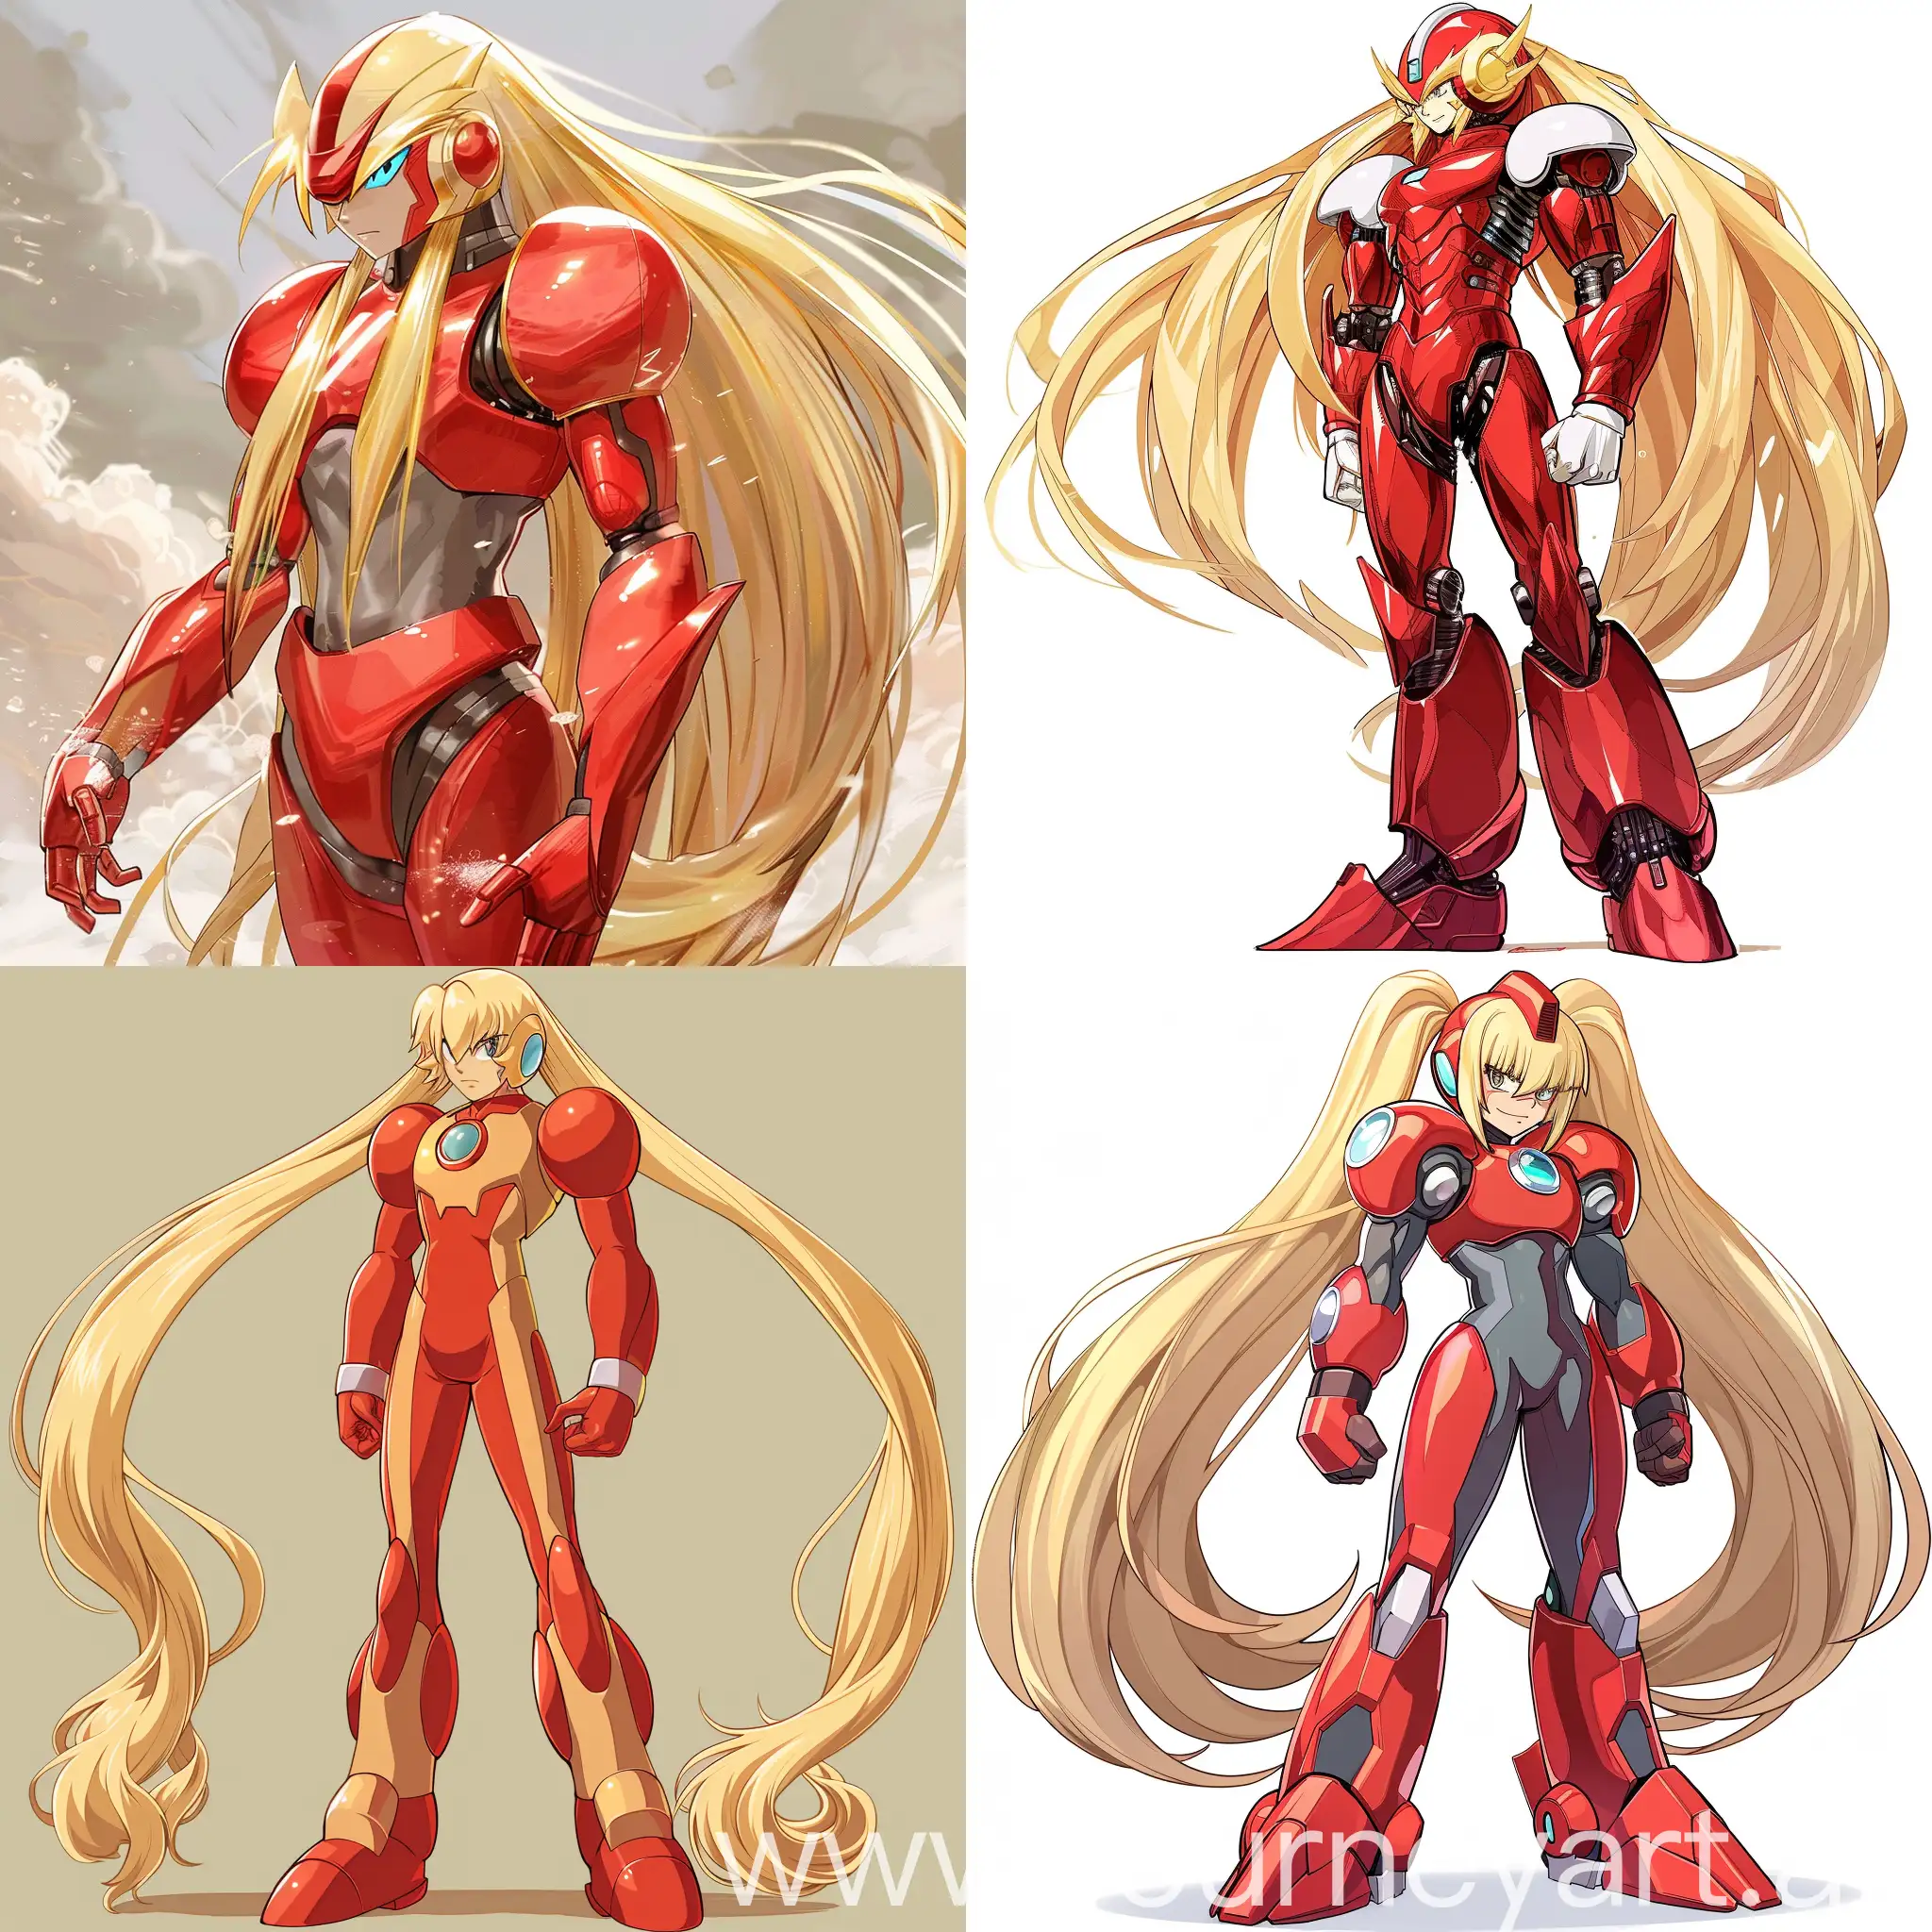 Red Zero Mega Man, Mega Man, long blonde hair, Male, 